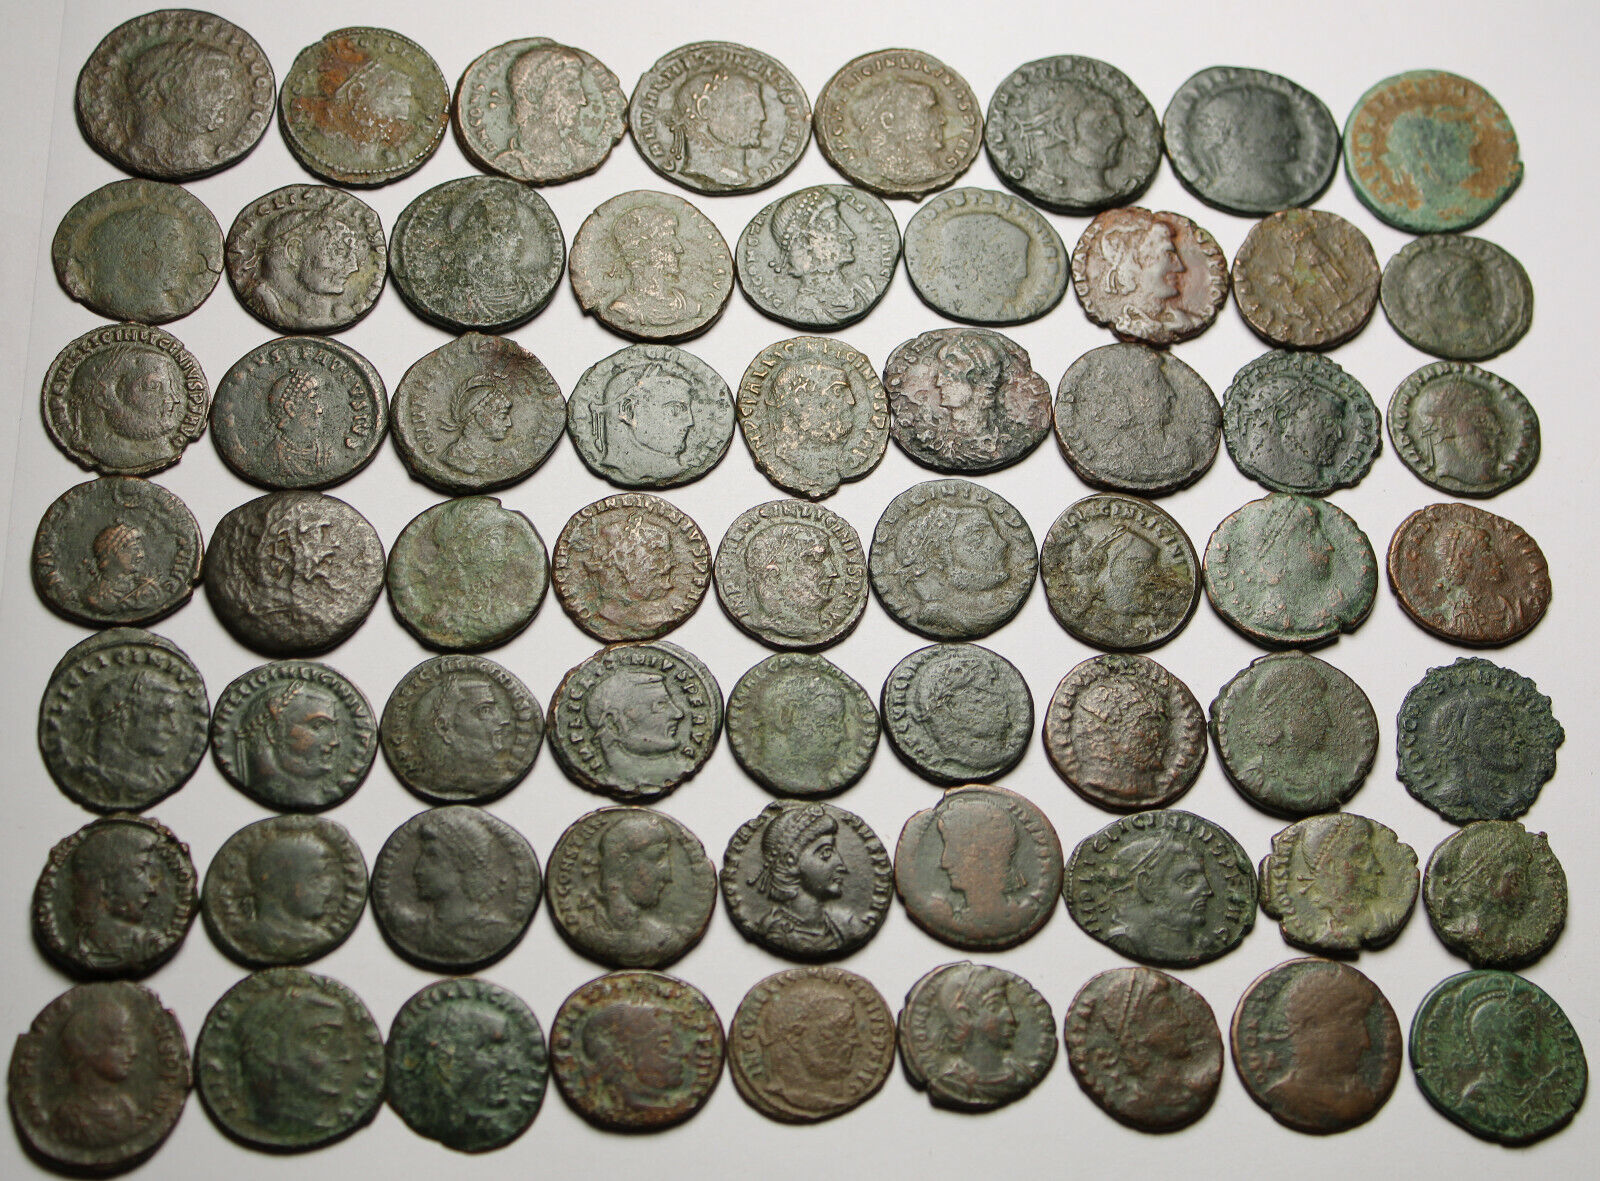 Lot of 3 large coins Rare original Ancient Roman Constantius Licinius Maximianus Без бренда - фотография #4